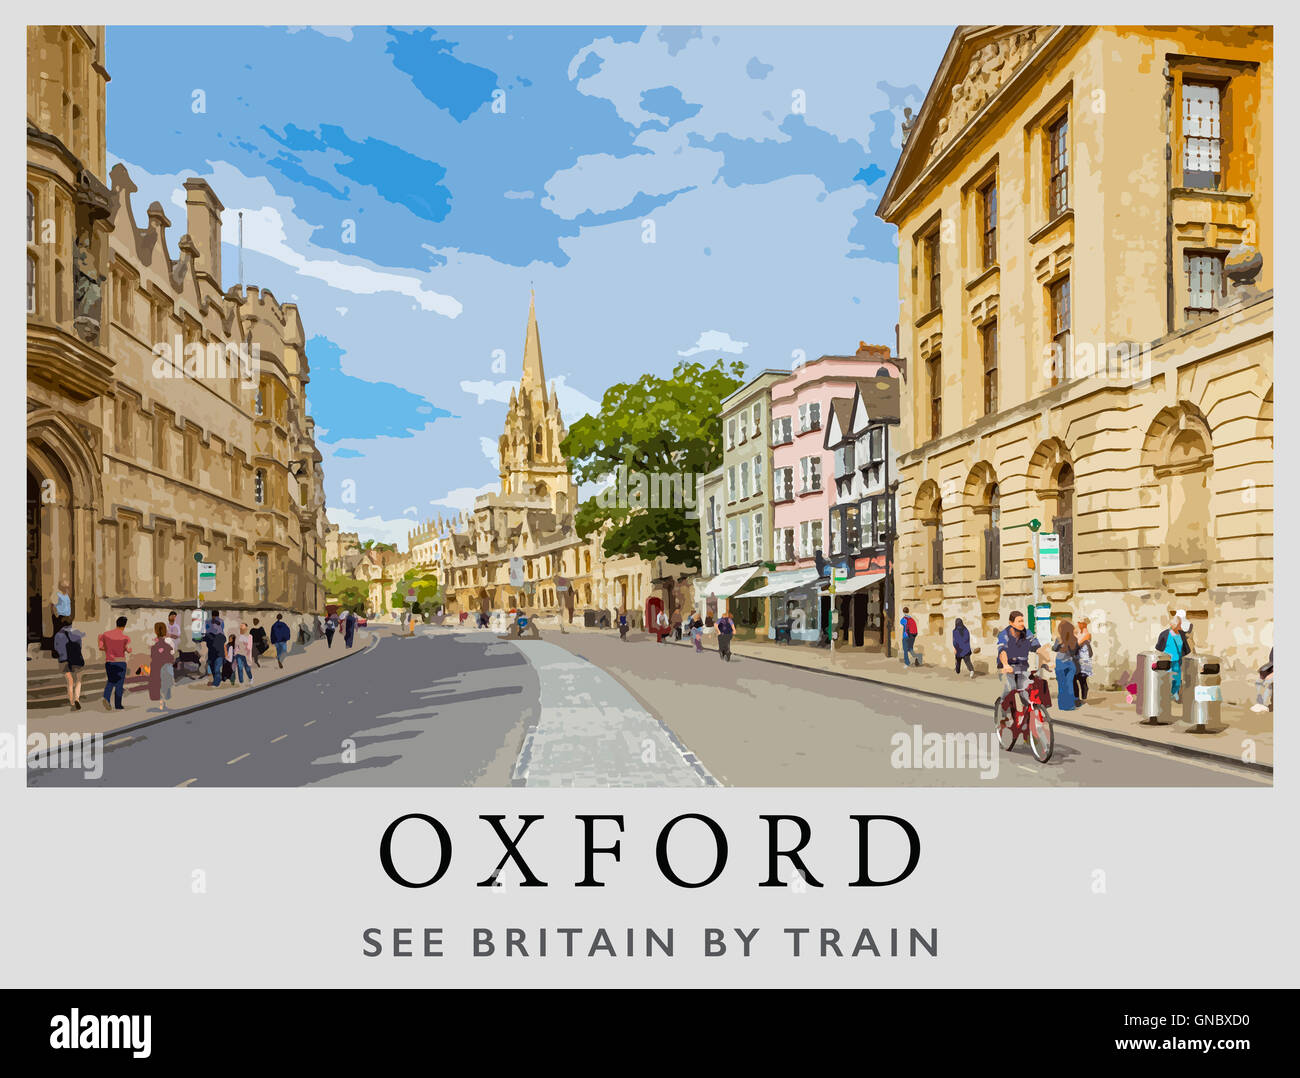 Una interpretación moderna de un cartel de 1958 para los ferrocarriles británicos por el artista Alan Carr Linford de Oxford, Oxford, Inglaterra High St. Foto de stock